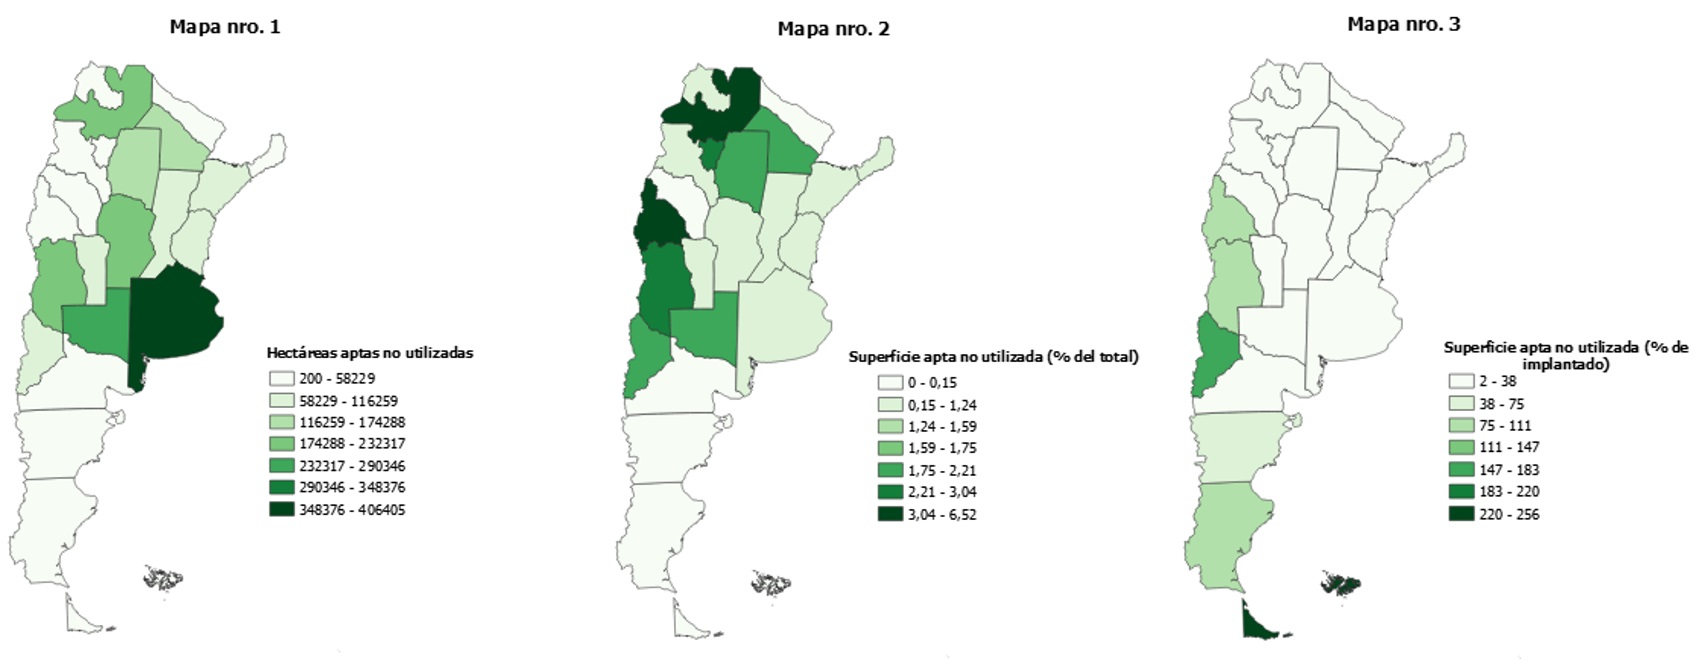 Disponibilidad de tierras (hectáreas) aptas para cultivo no sembradas, 2017-2018